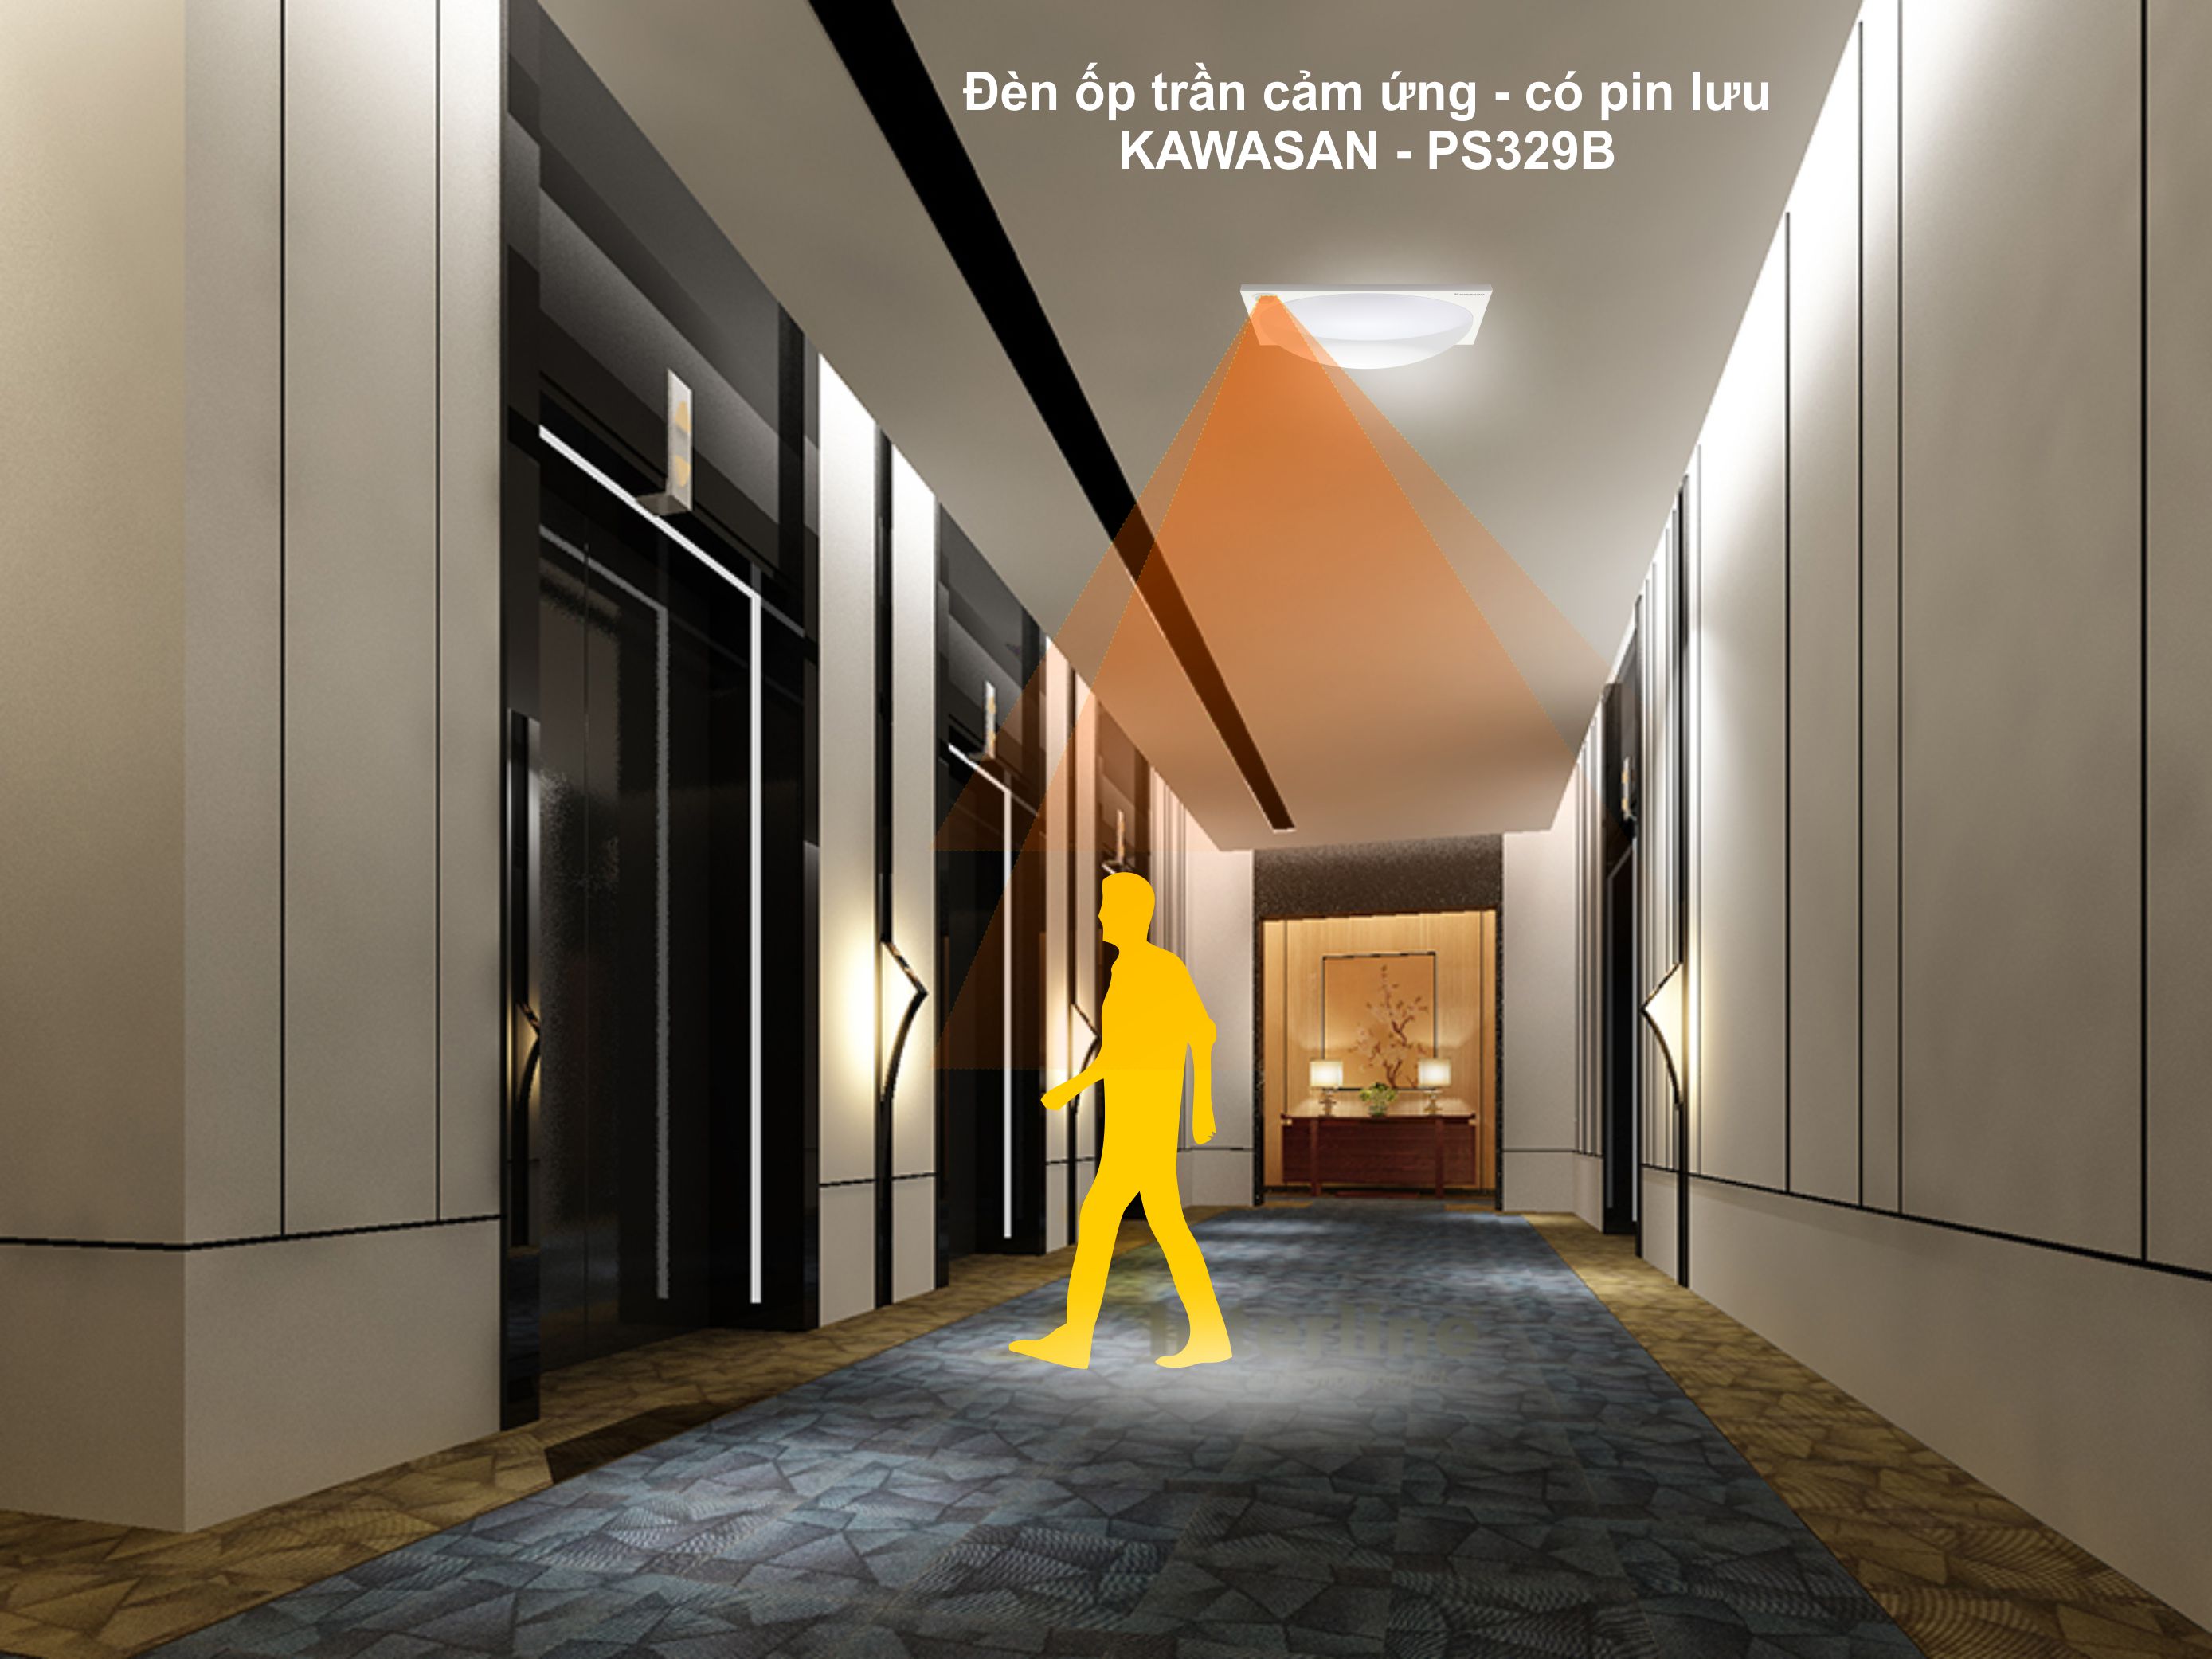 Đèn led cảm ứng dùng chiếu sáng cho hành lang